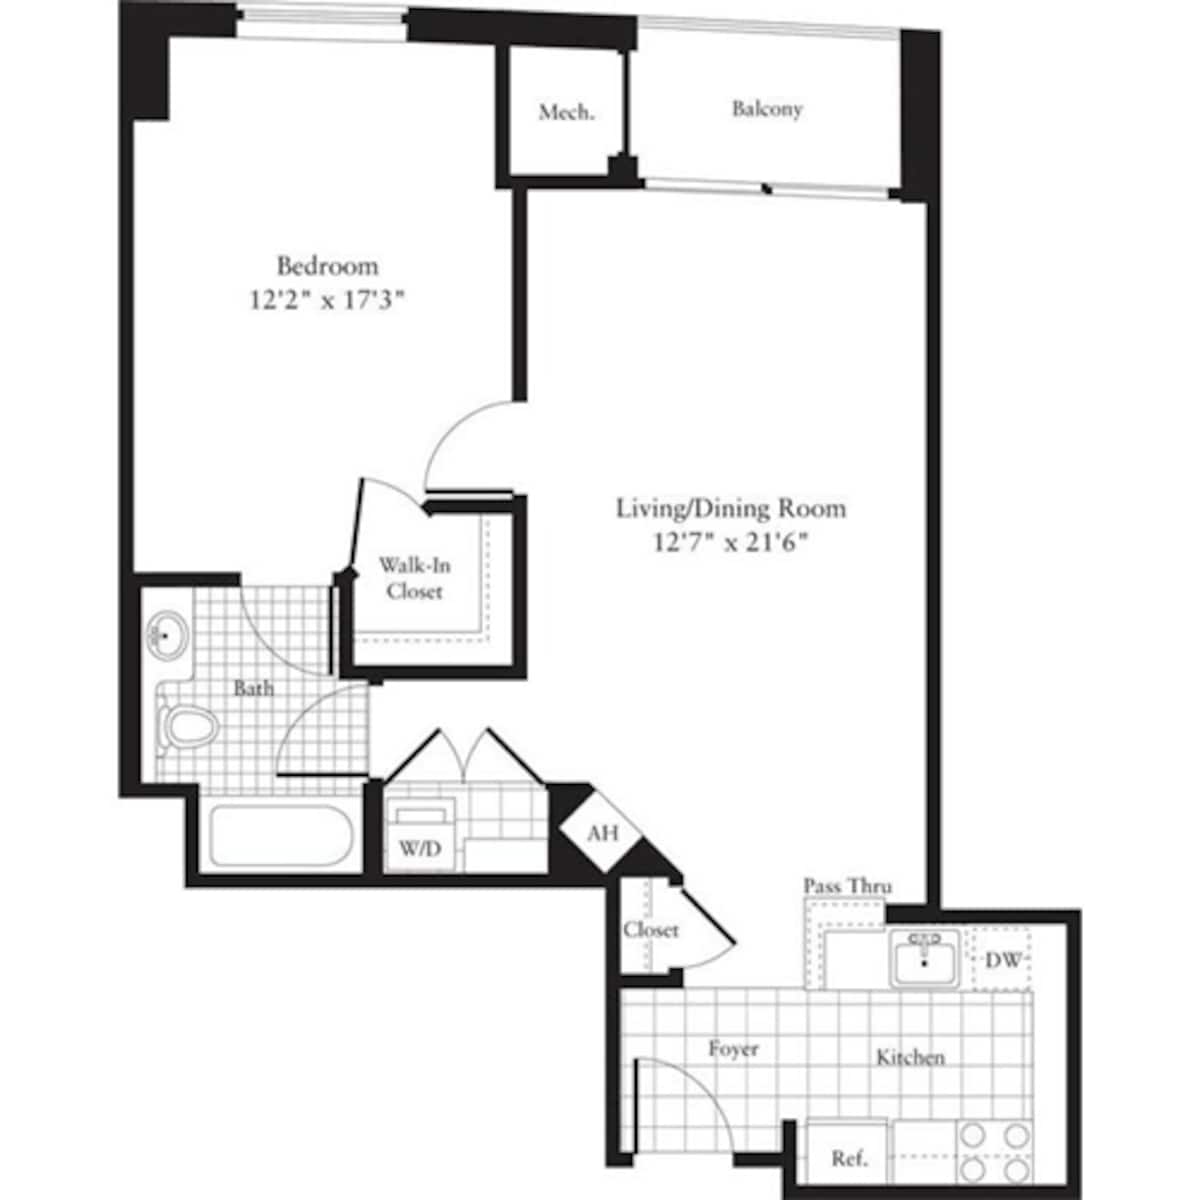 Floorplan diagram for 1 Bedroom D, showing 1 bedroom